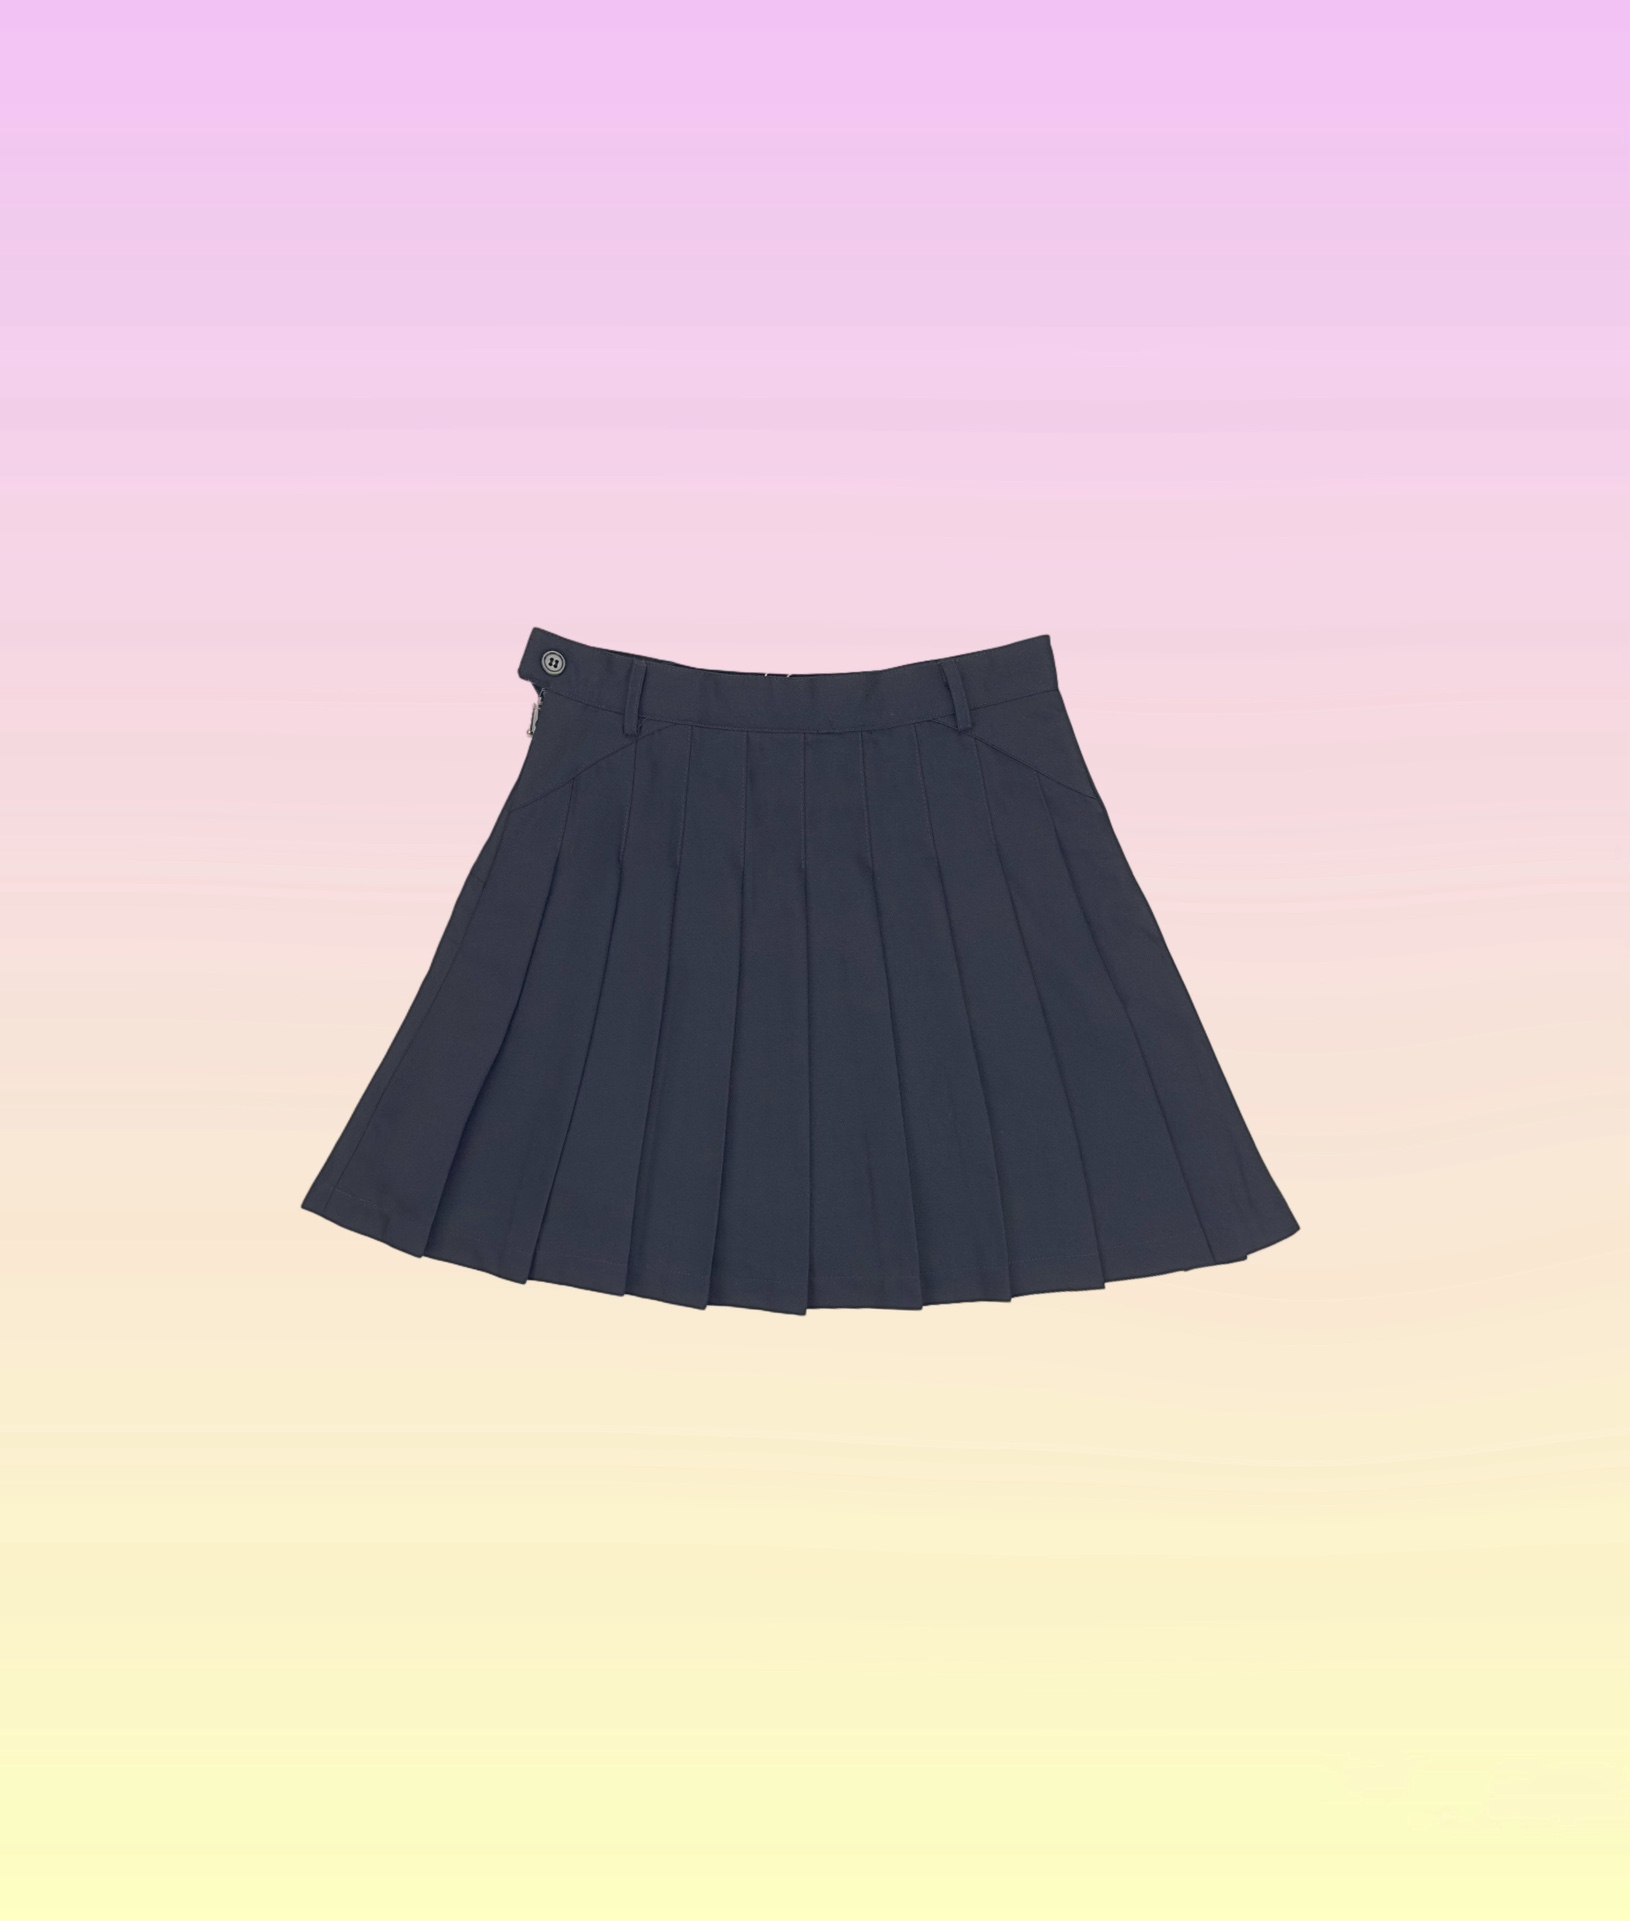 Pywdws ( 顶级版本 区别通货 )- TB纯色百褶裙（多褶款）- 颜色：图片色- 尺码：0  1  2  3  - 辅料:   全套定制辅料